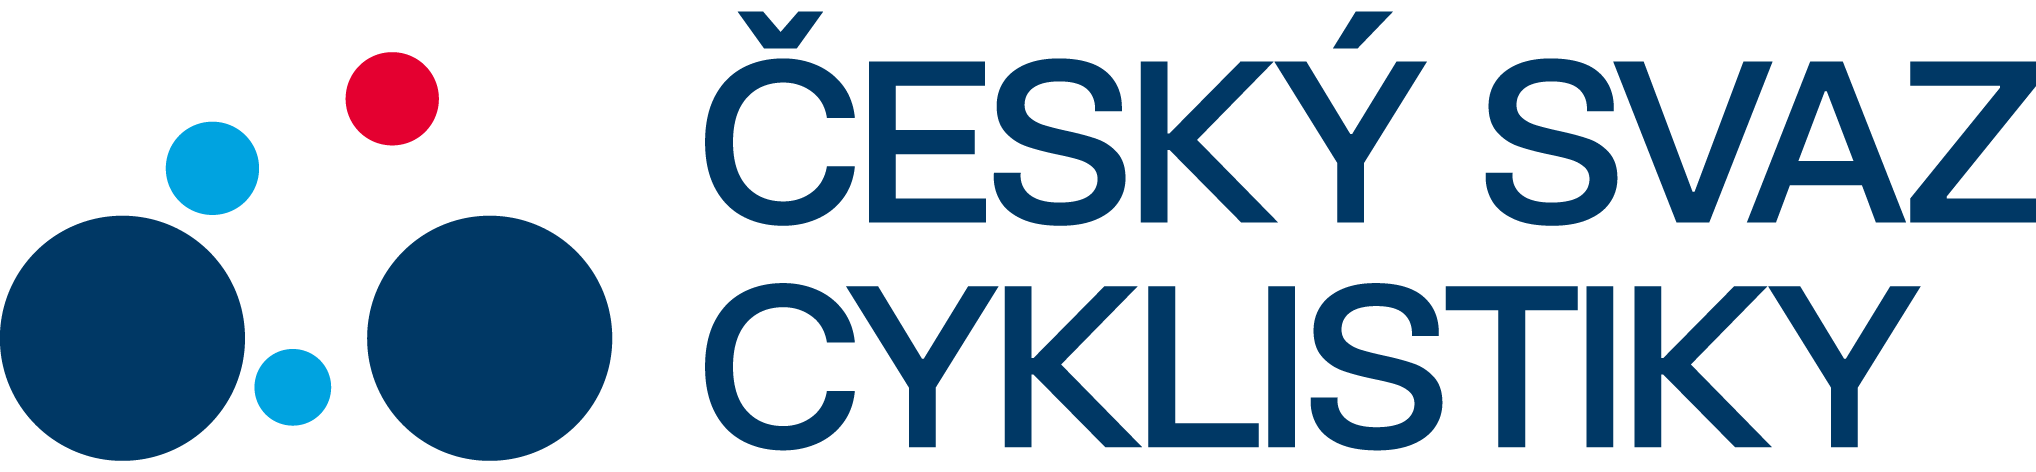 Český svaz cyklistiky - Oficiální l logo